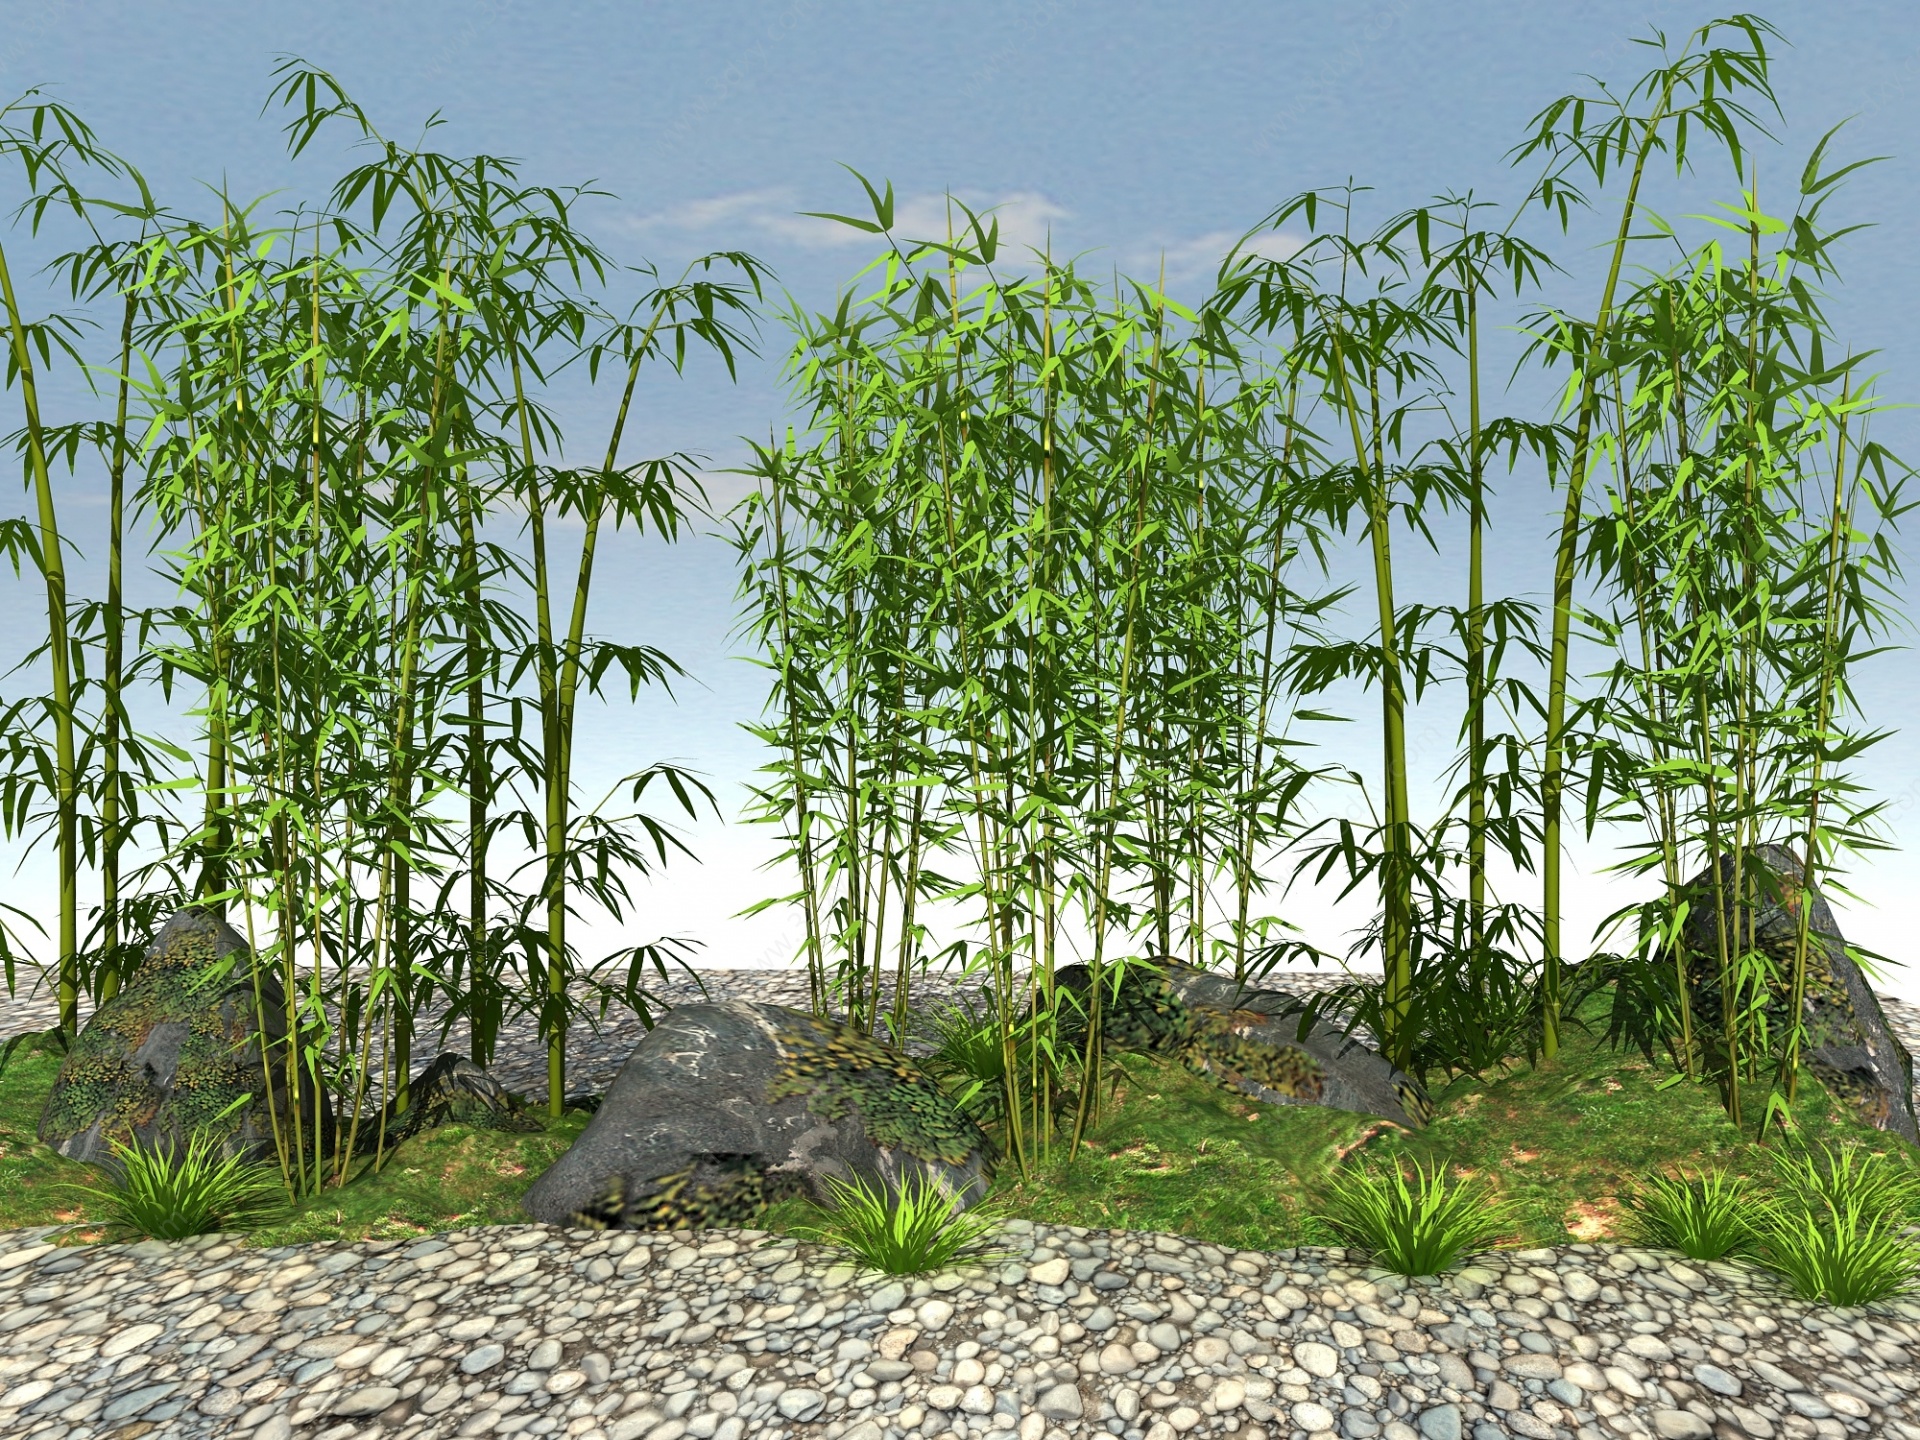 竹子3D模型